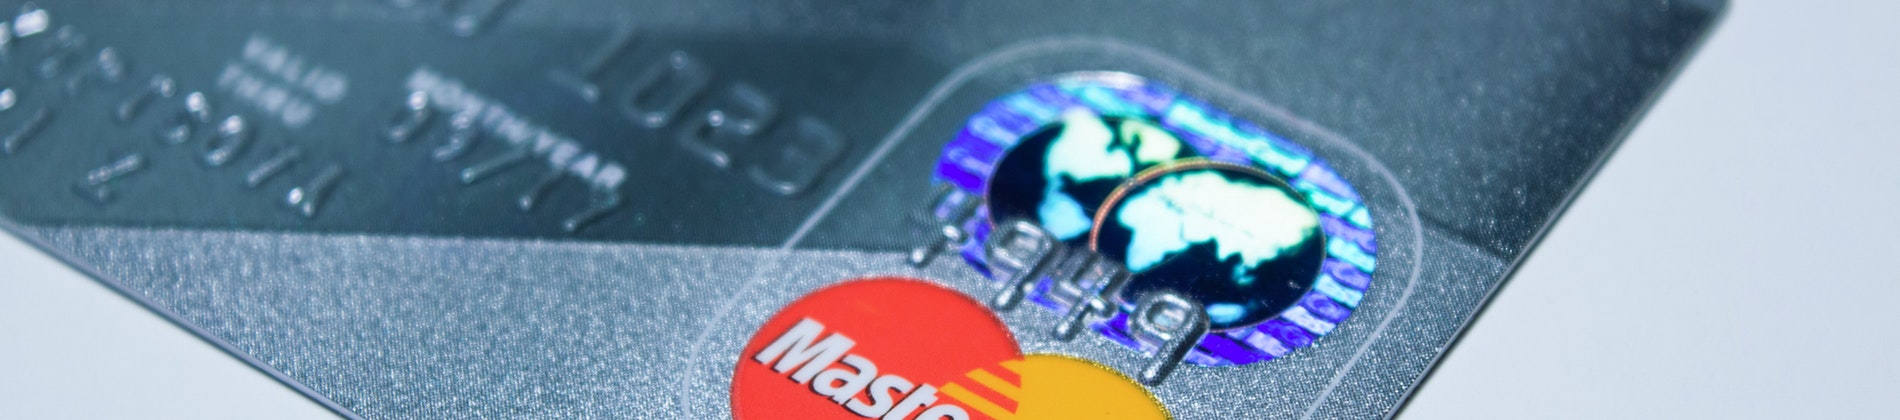 Visa Dankort, Mastercard og Apple Pay:  Her er alt det, du skal vide om betalingskort i 2019